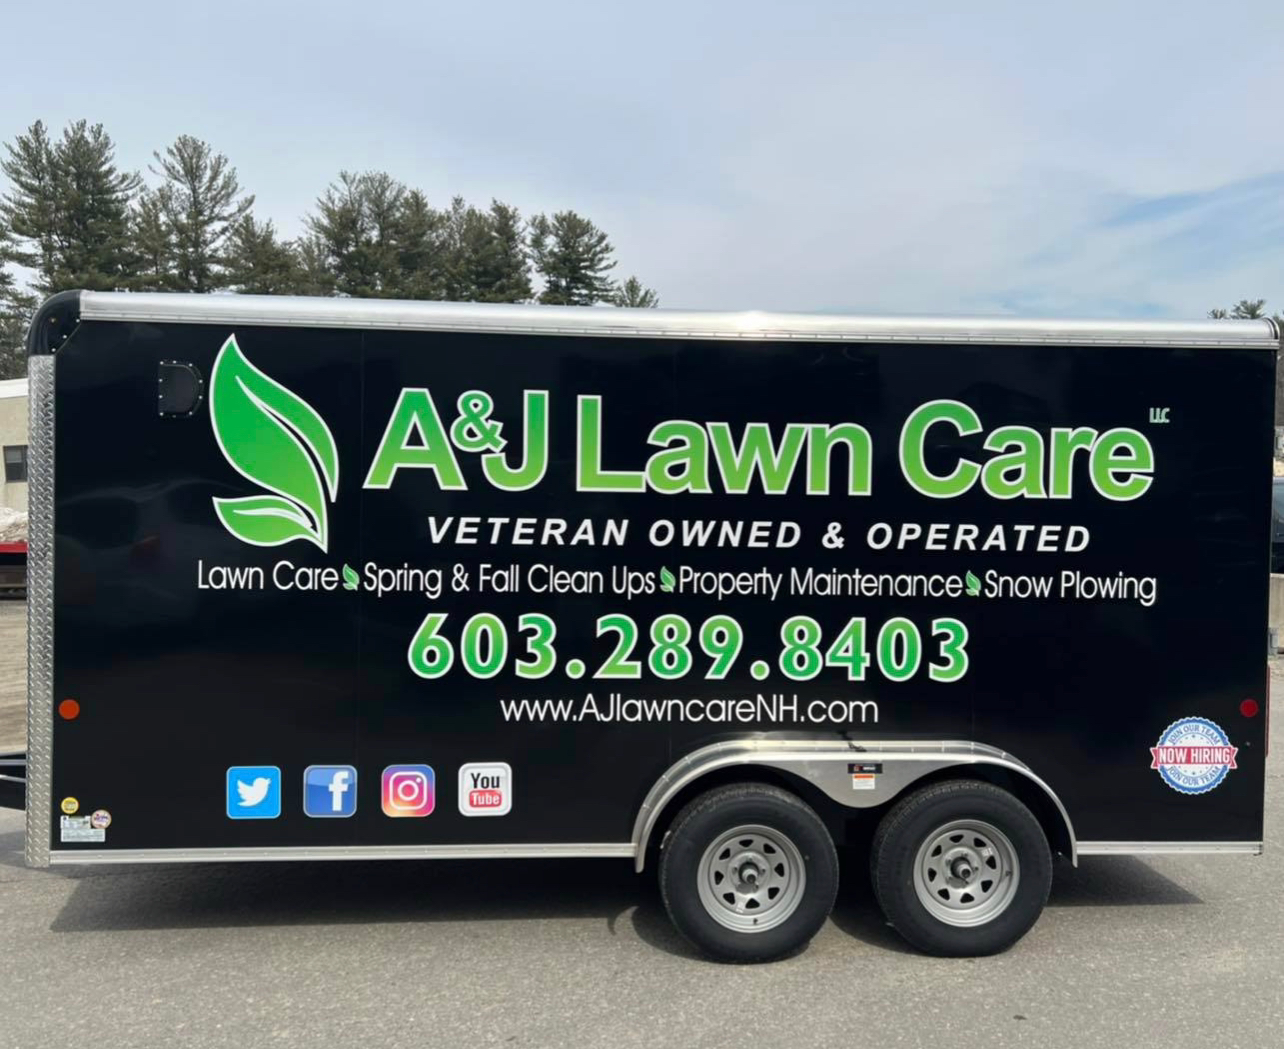 A & J Lawn Care